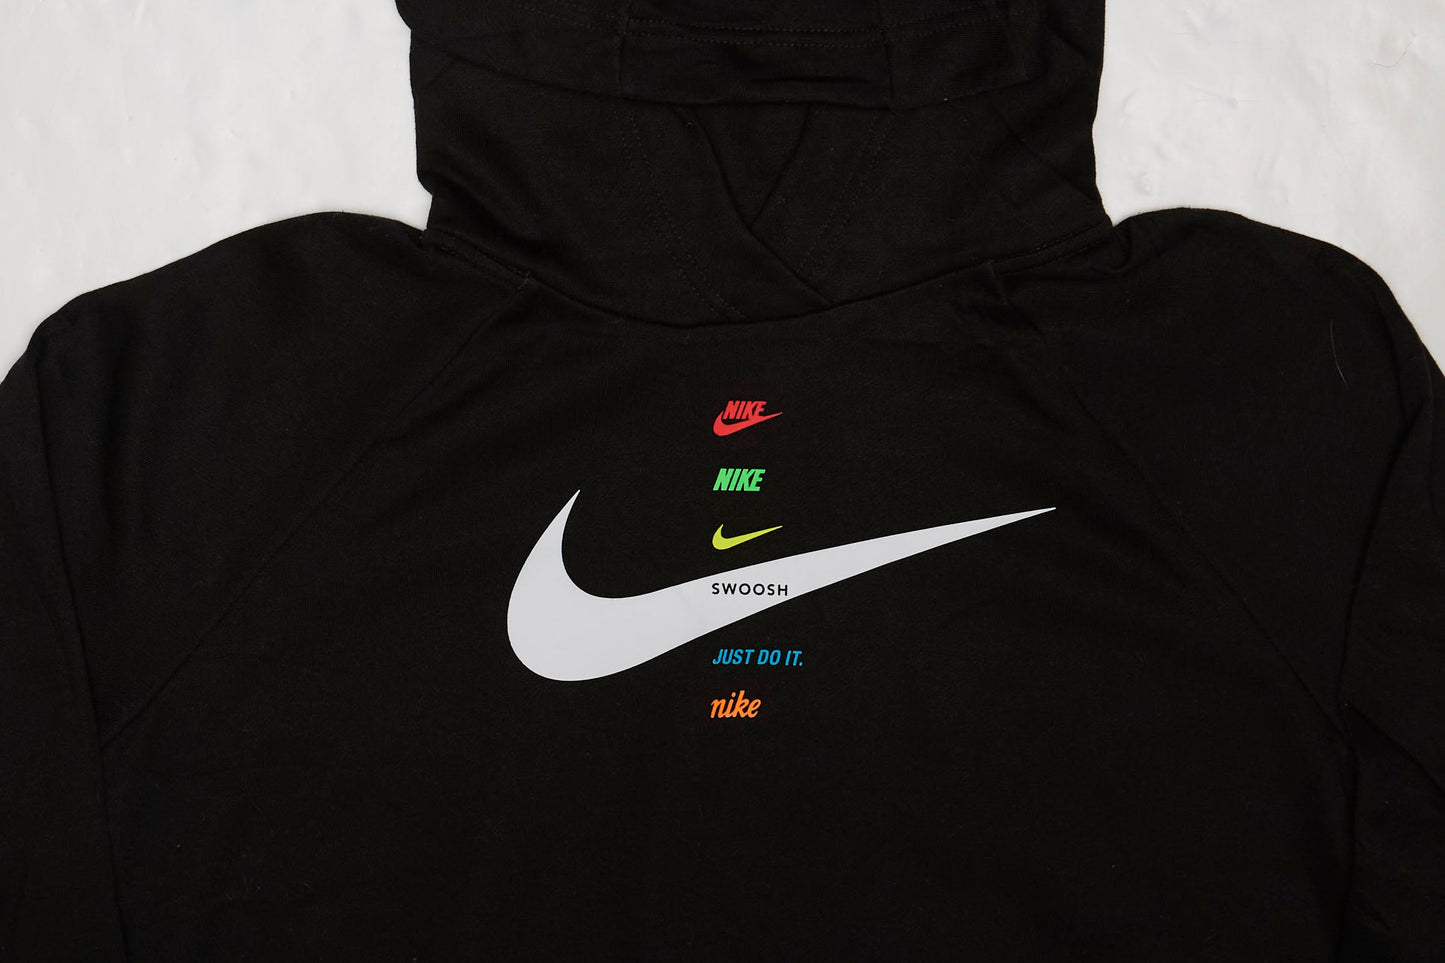 Womens Nike Crop Top Sweatshirt - M